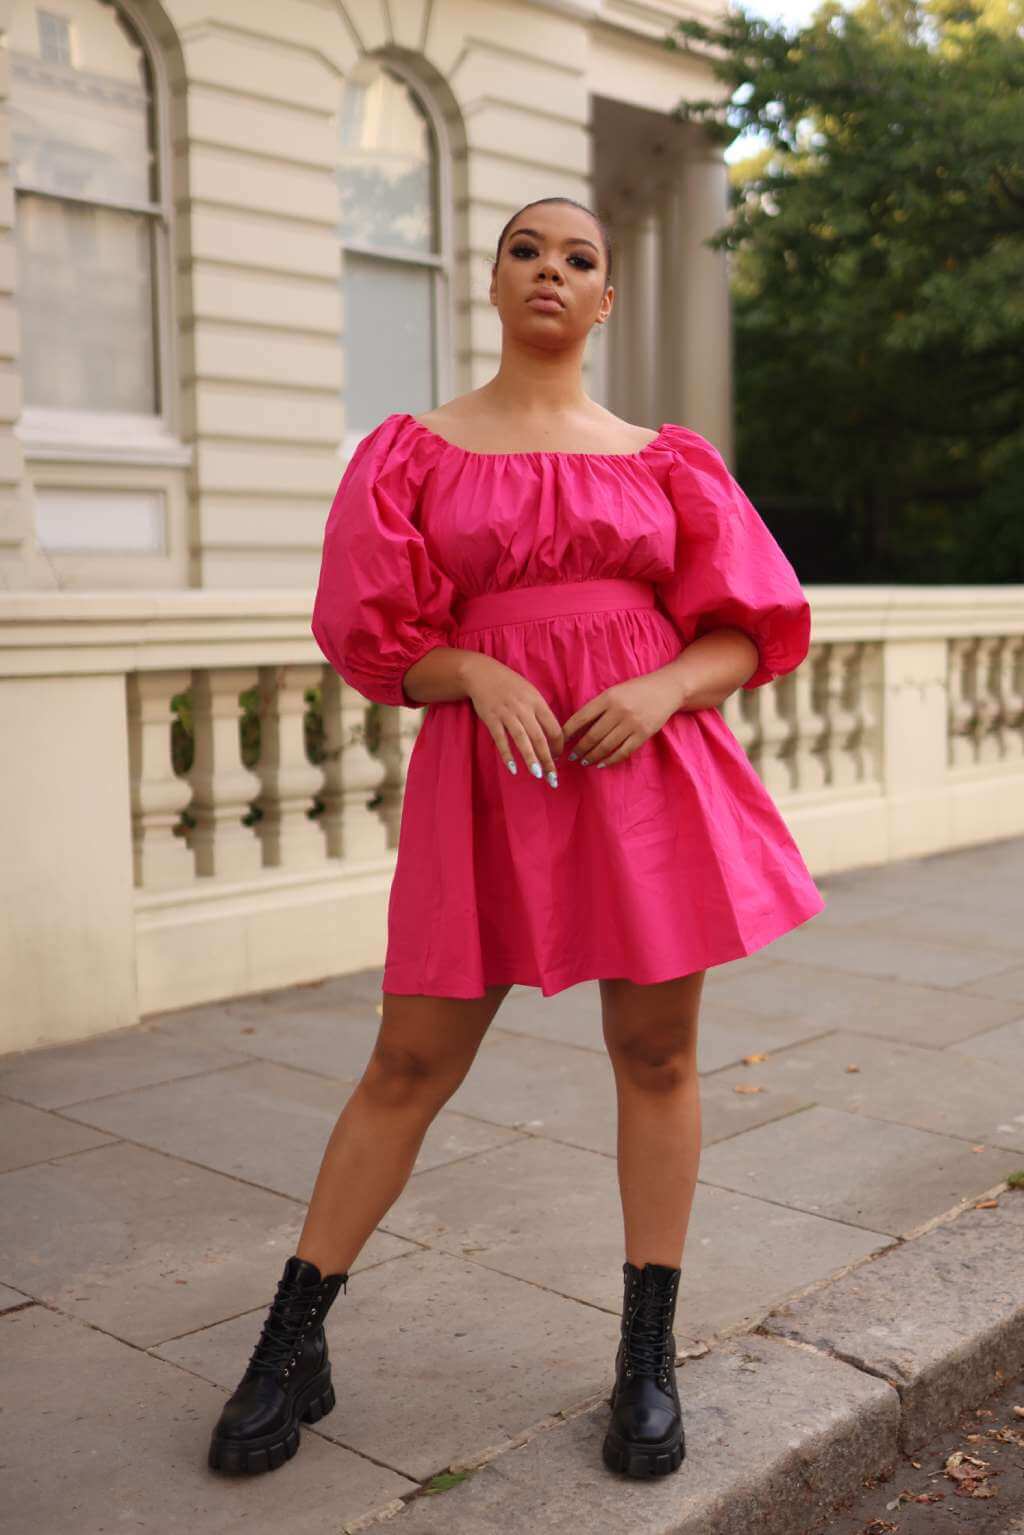 Pink Poplin Dress